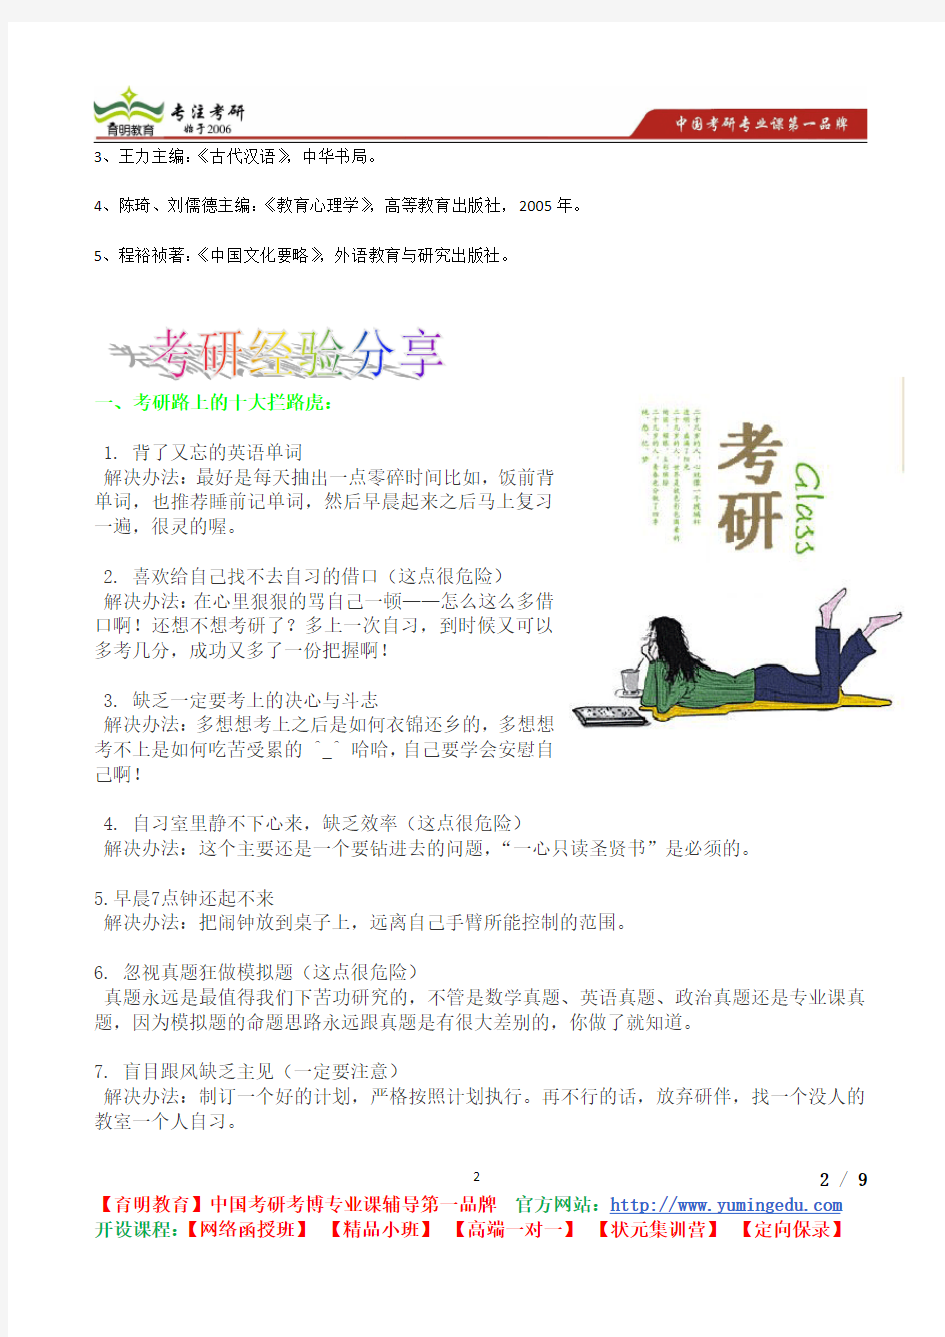 2015年北京外国语大学计算语言学考研真题,复习方法,考研流程,考研经验